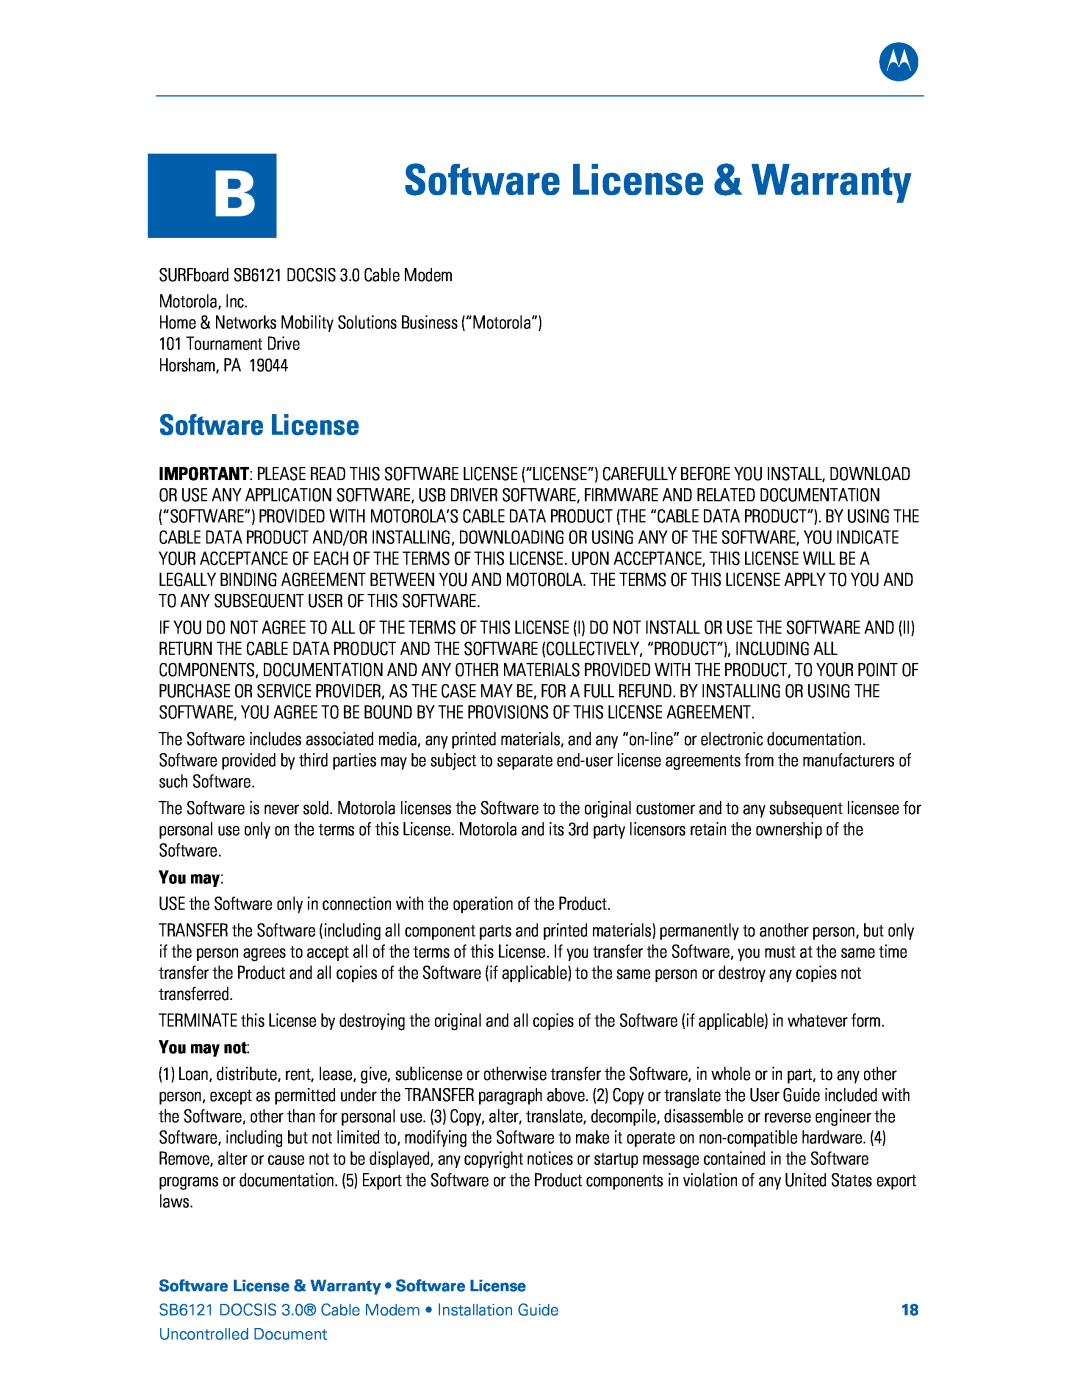 Motorola SB6121, 575319-019-00 manual Software License & Warranty, You may not 